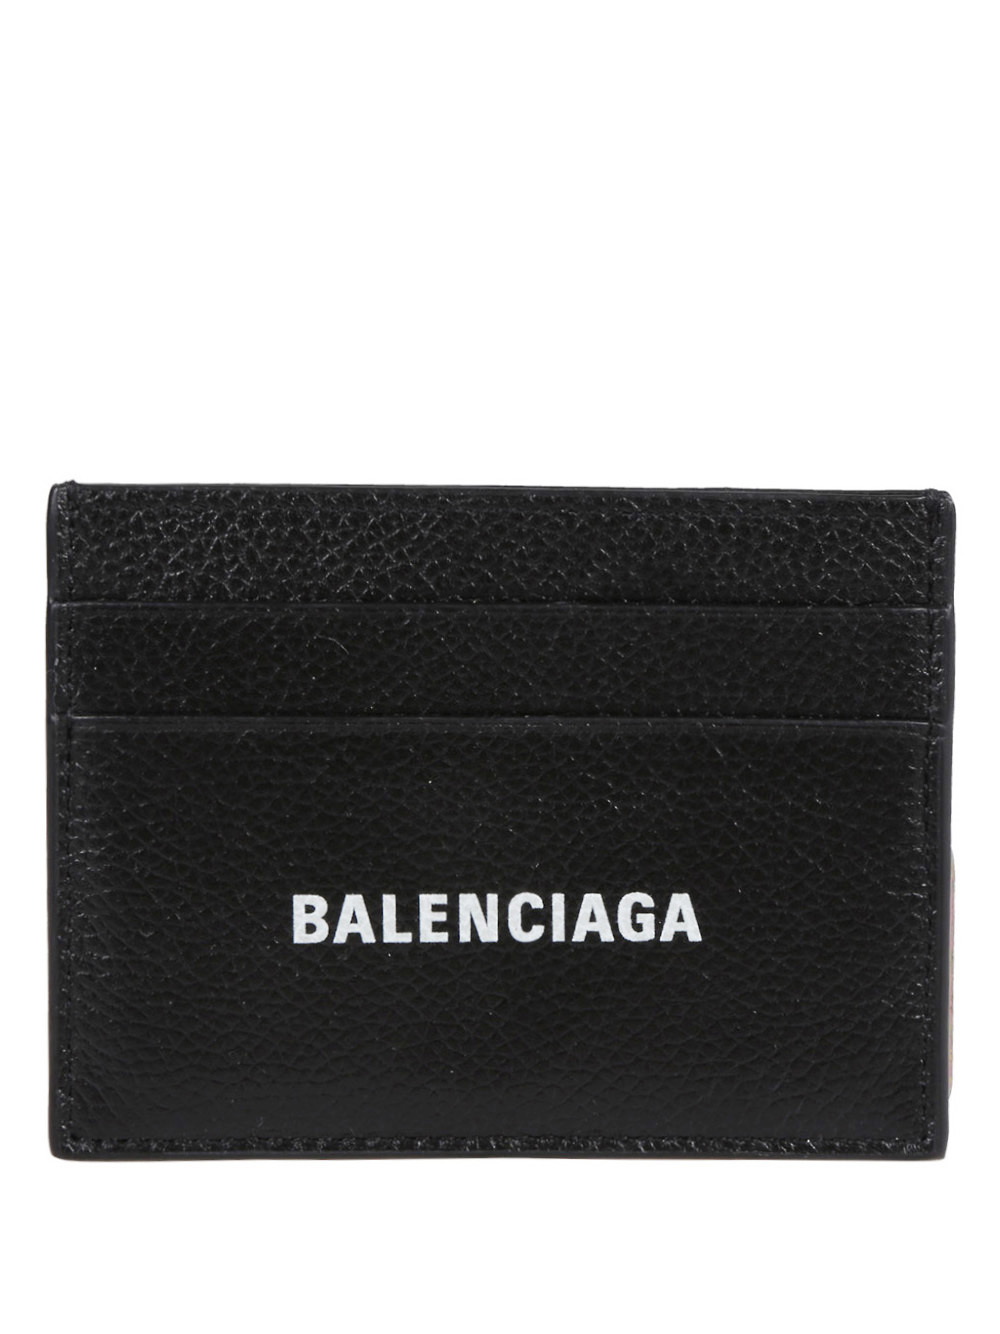 BALENCIAGA - Leather Credit Card Holder Balenciaga